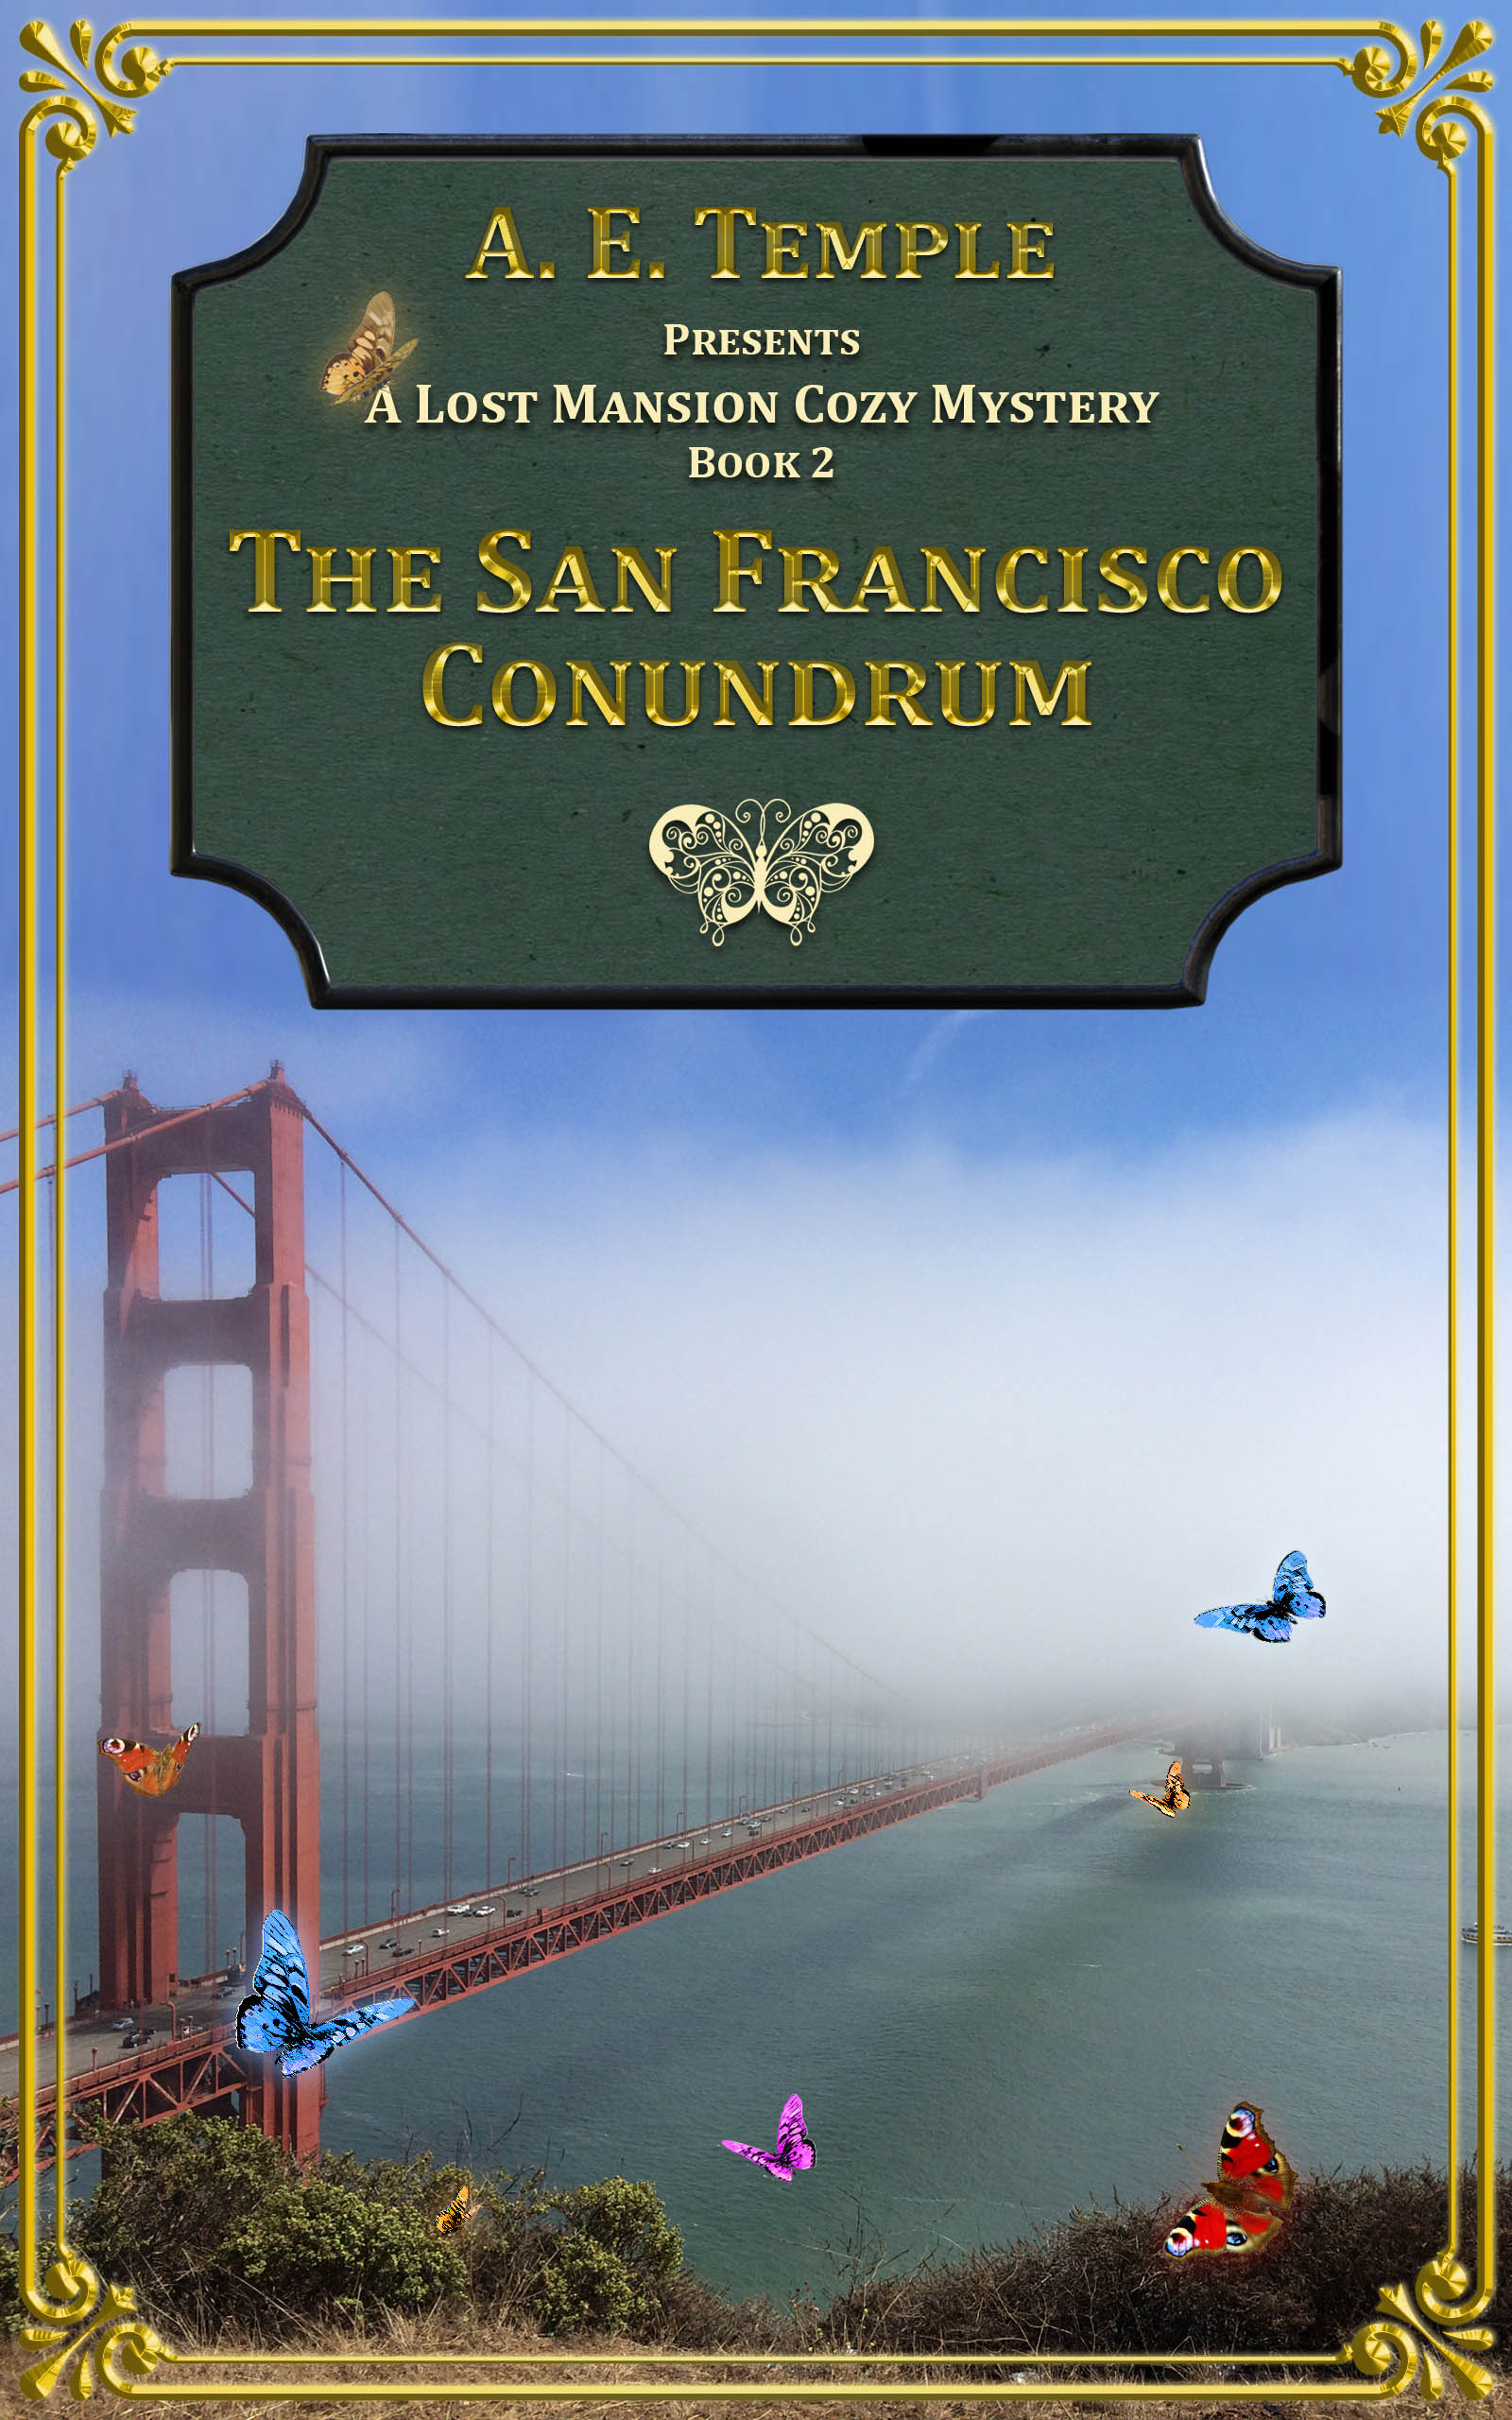 The San Francisco Conundrum